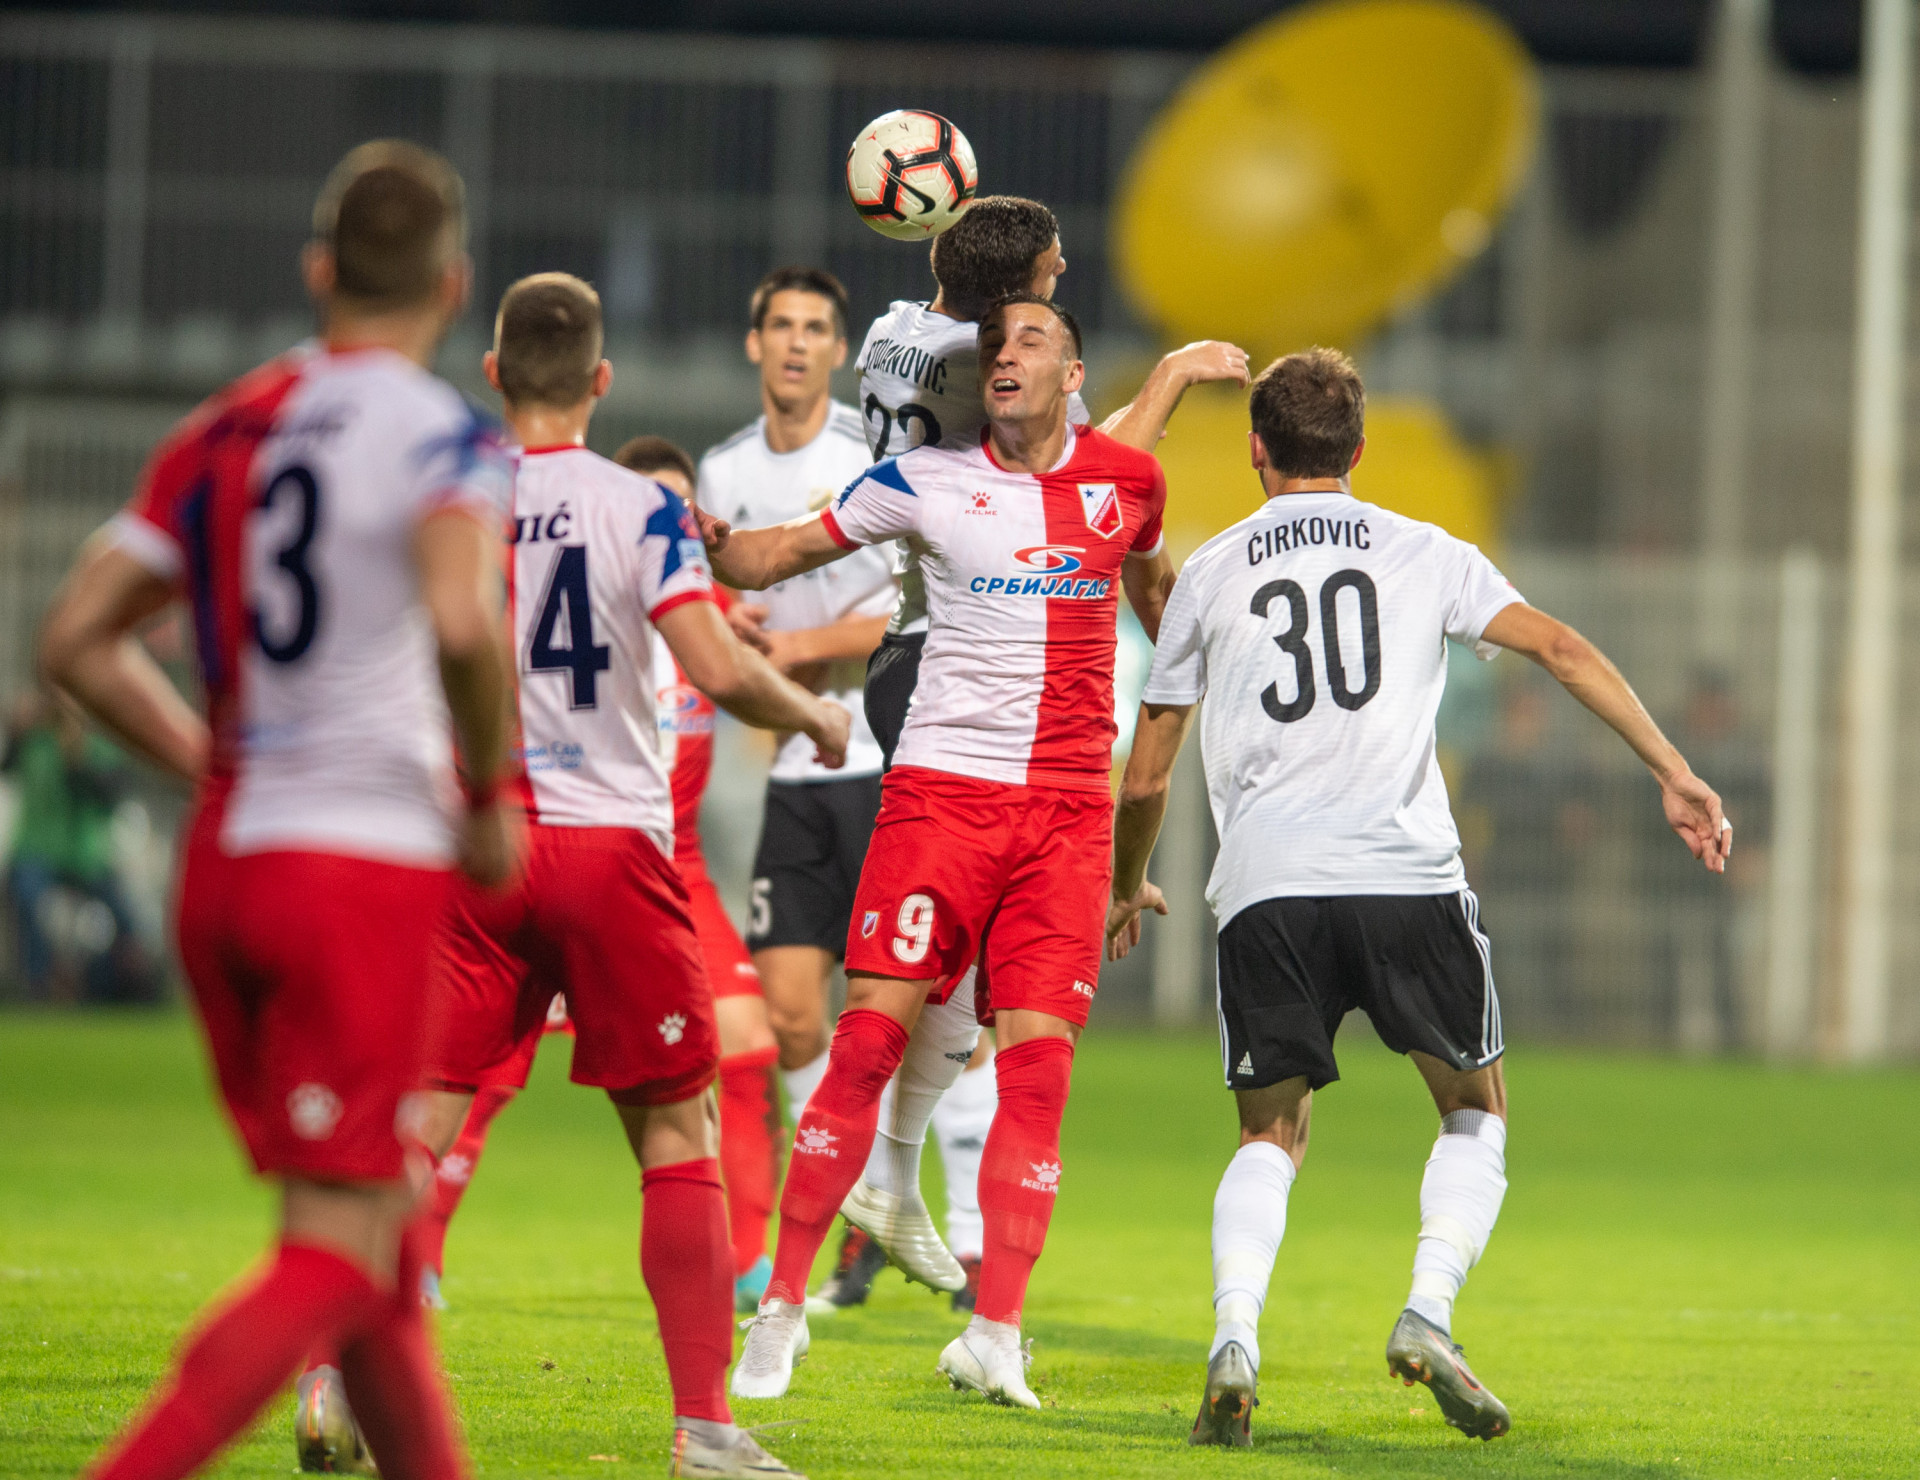 Čukarički - Vojvodina 0:0 | FkCukaricki